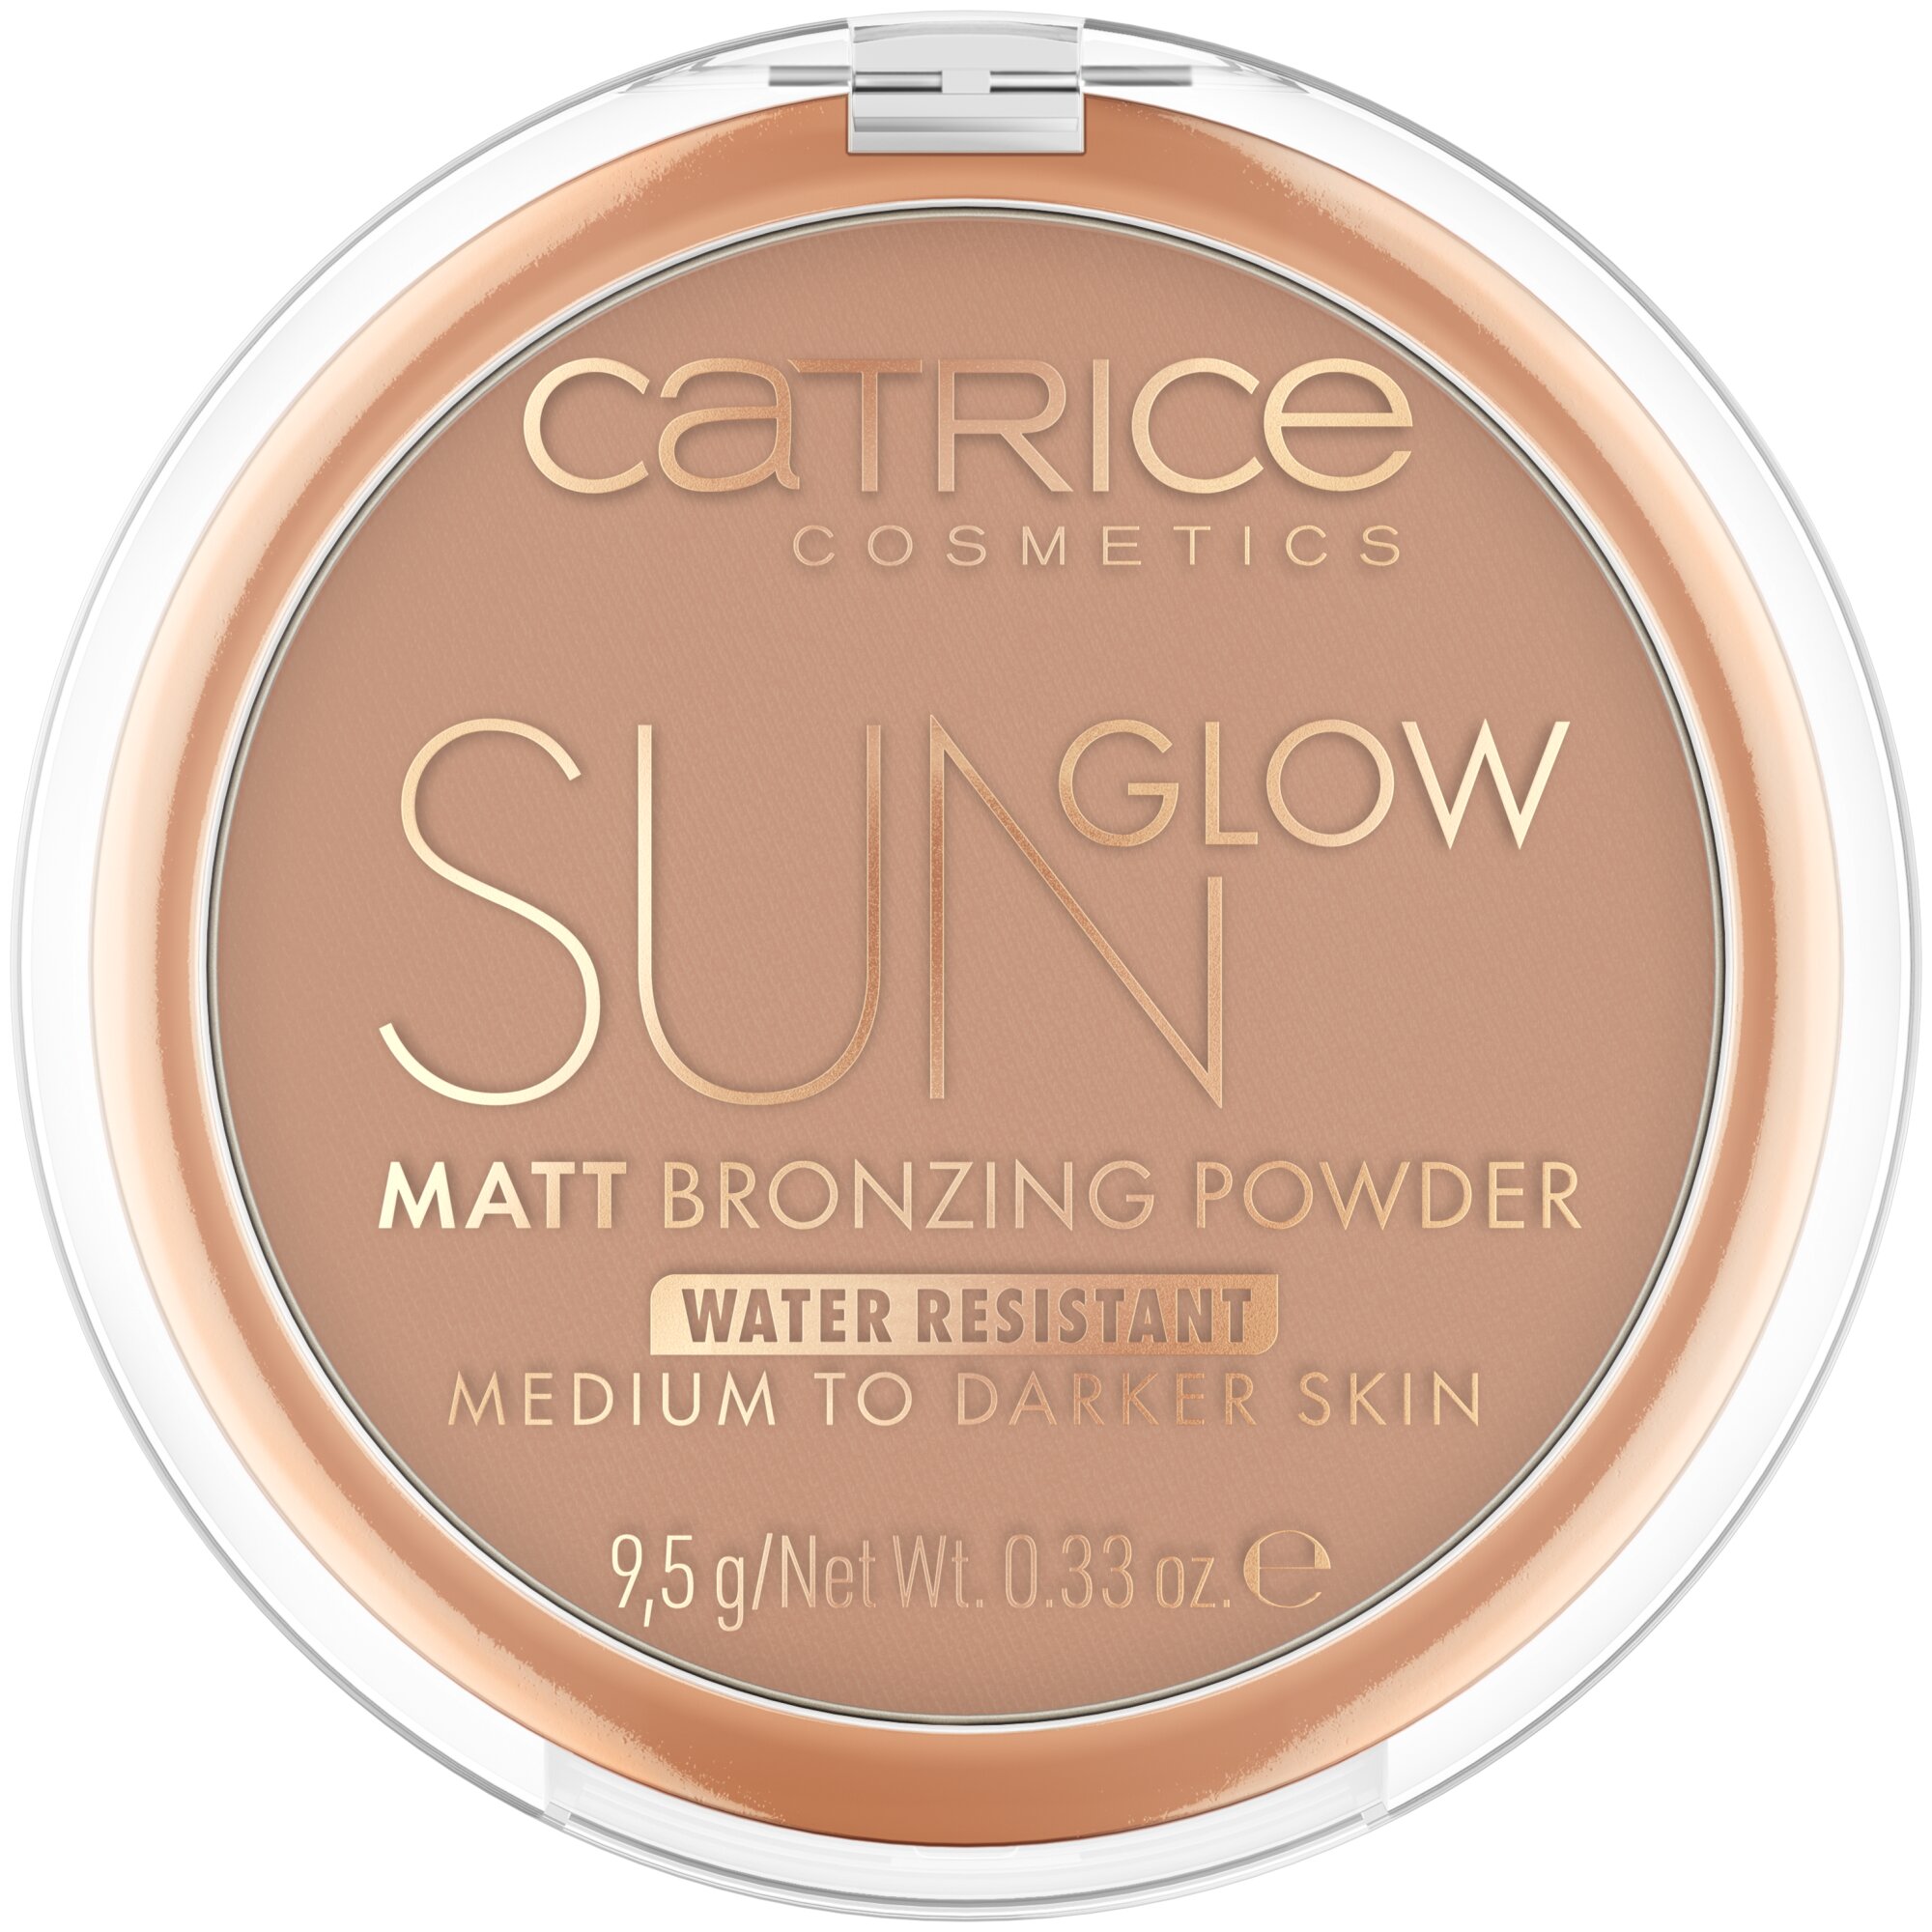 Pudra bronzanta Sun Glow Matt Bronzing, 035 - Universal Bronze, 9.5 g, Catrice